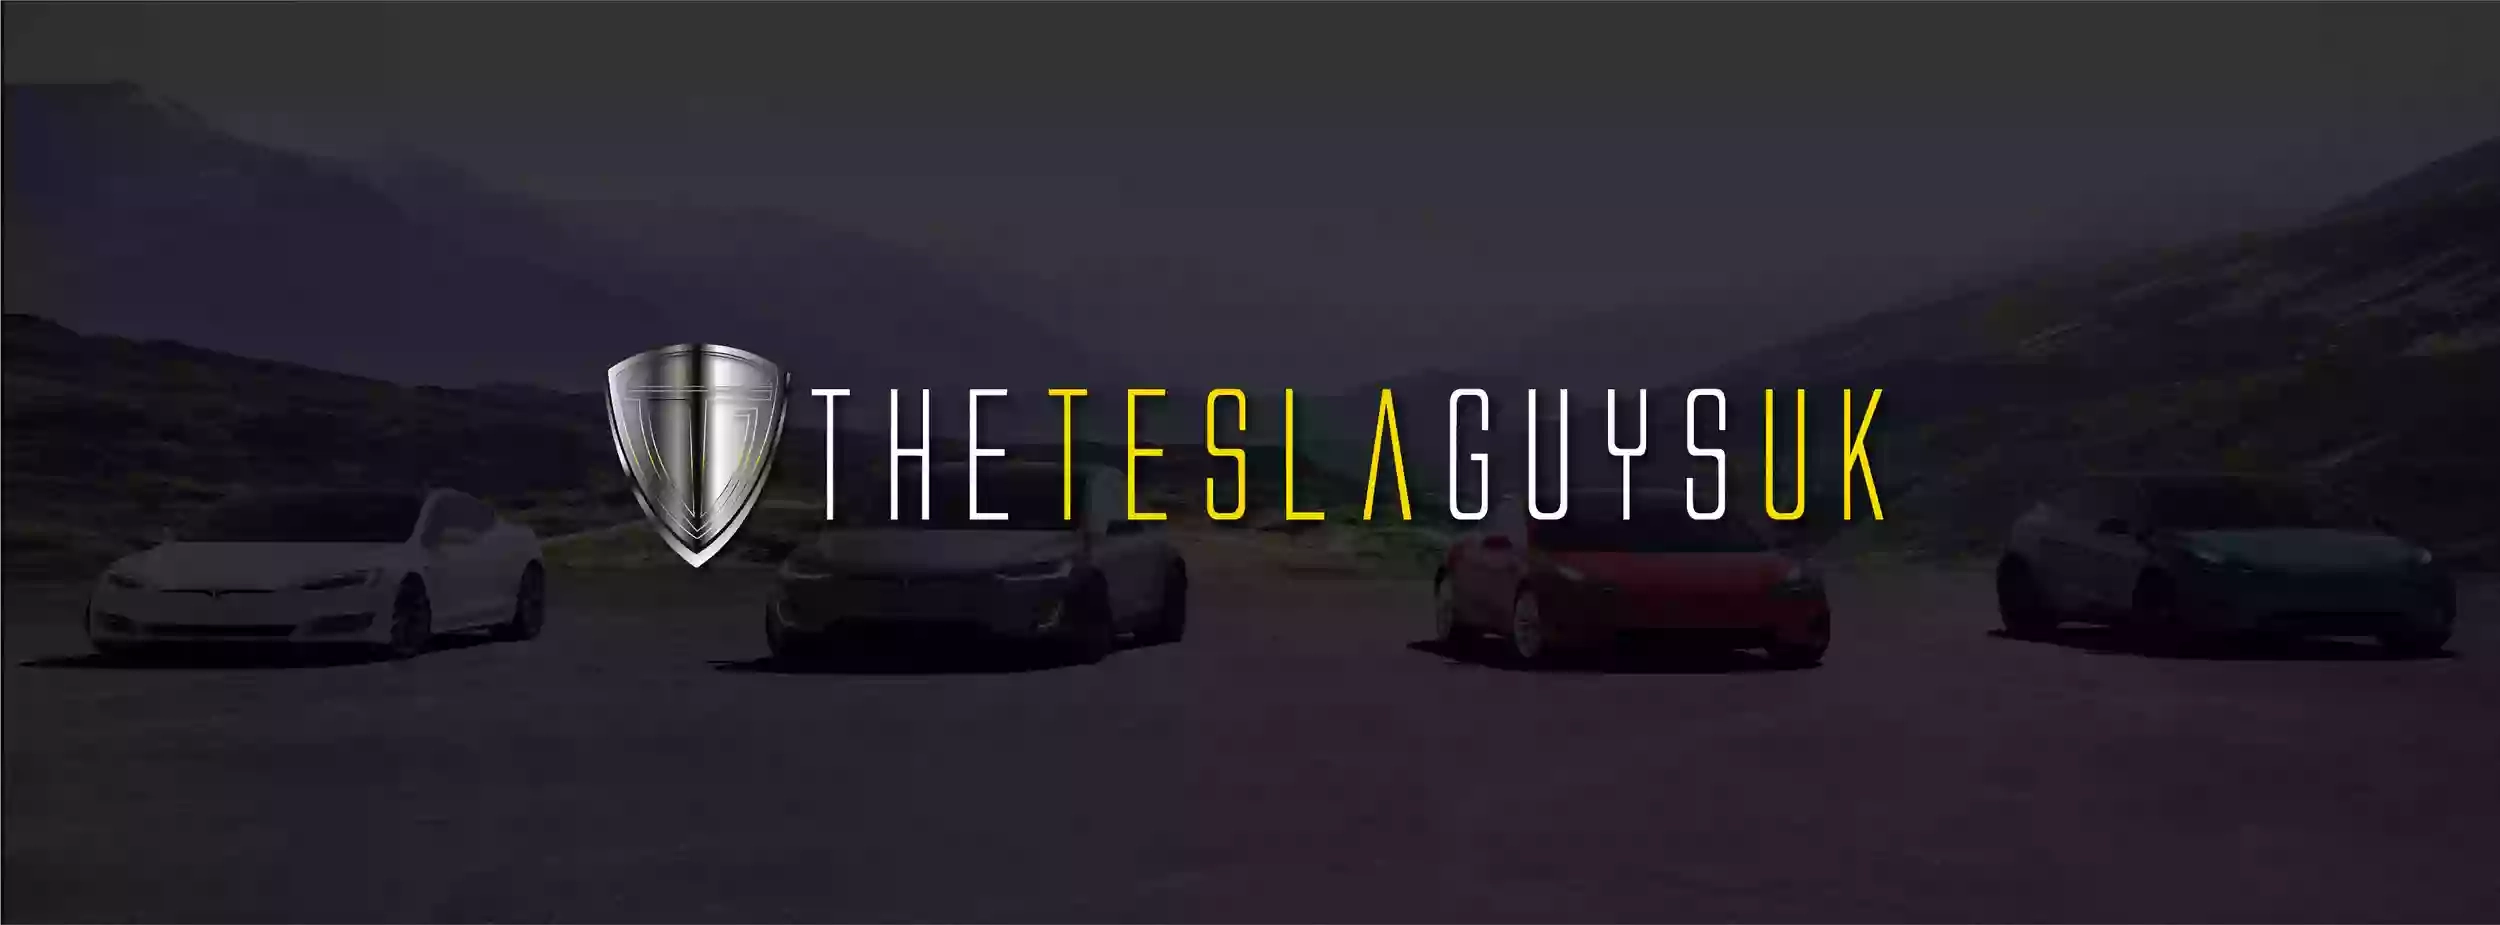 The Tesla Guys Uk